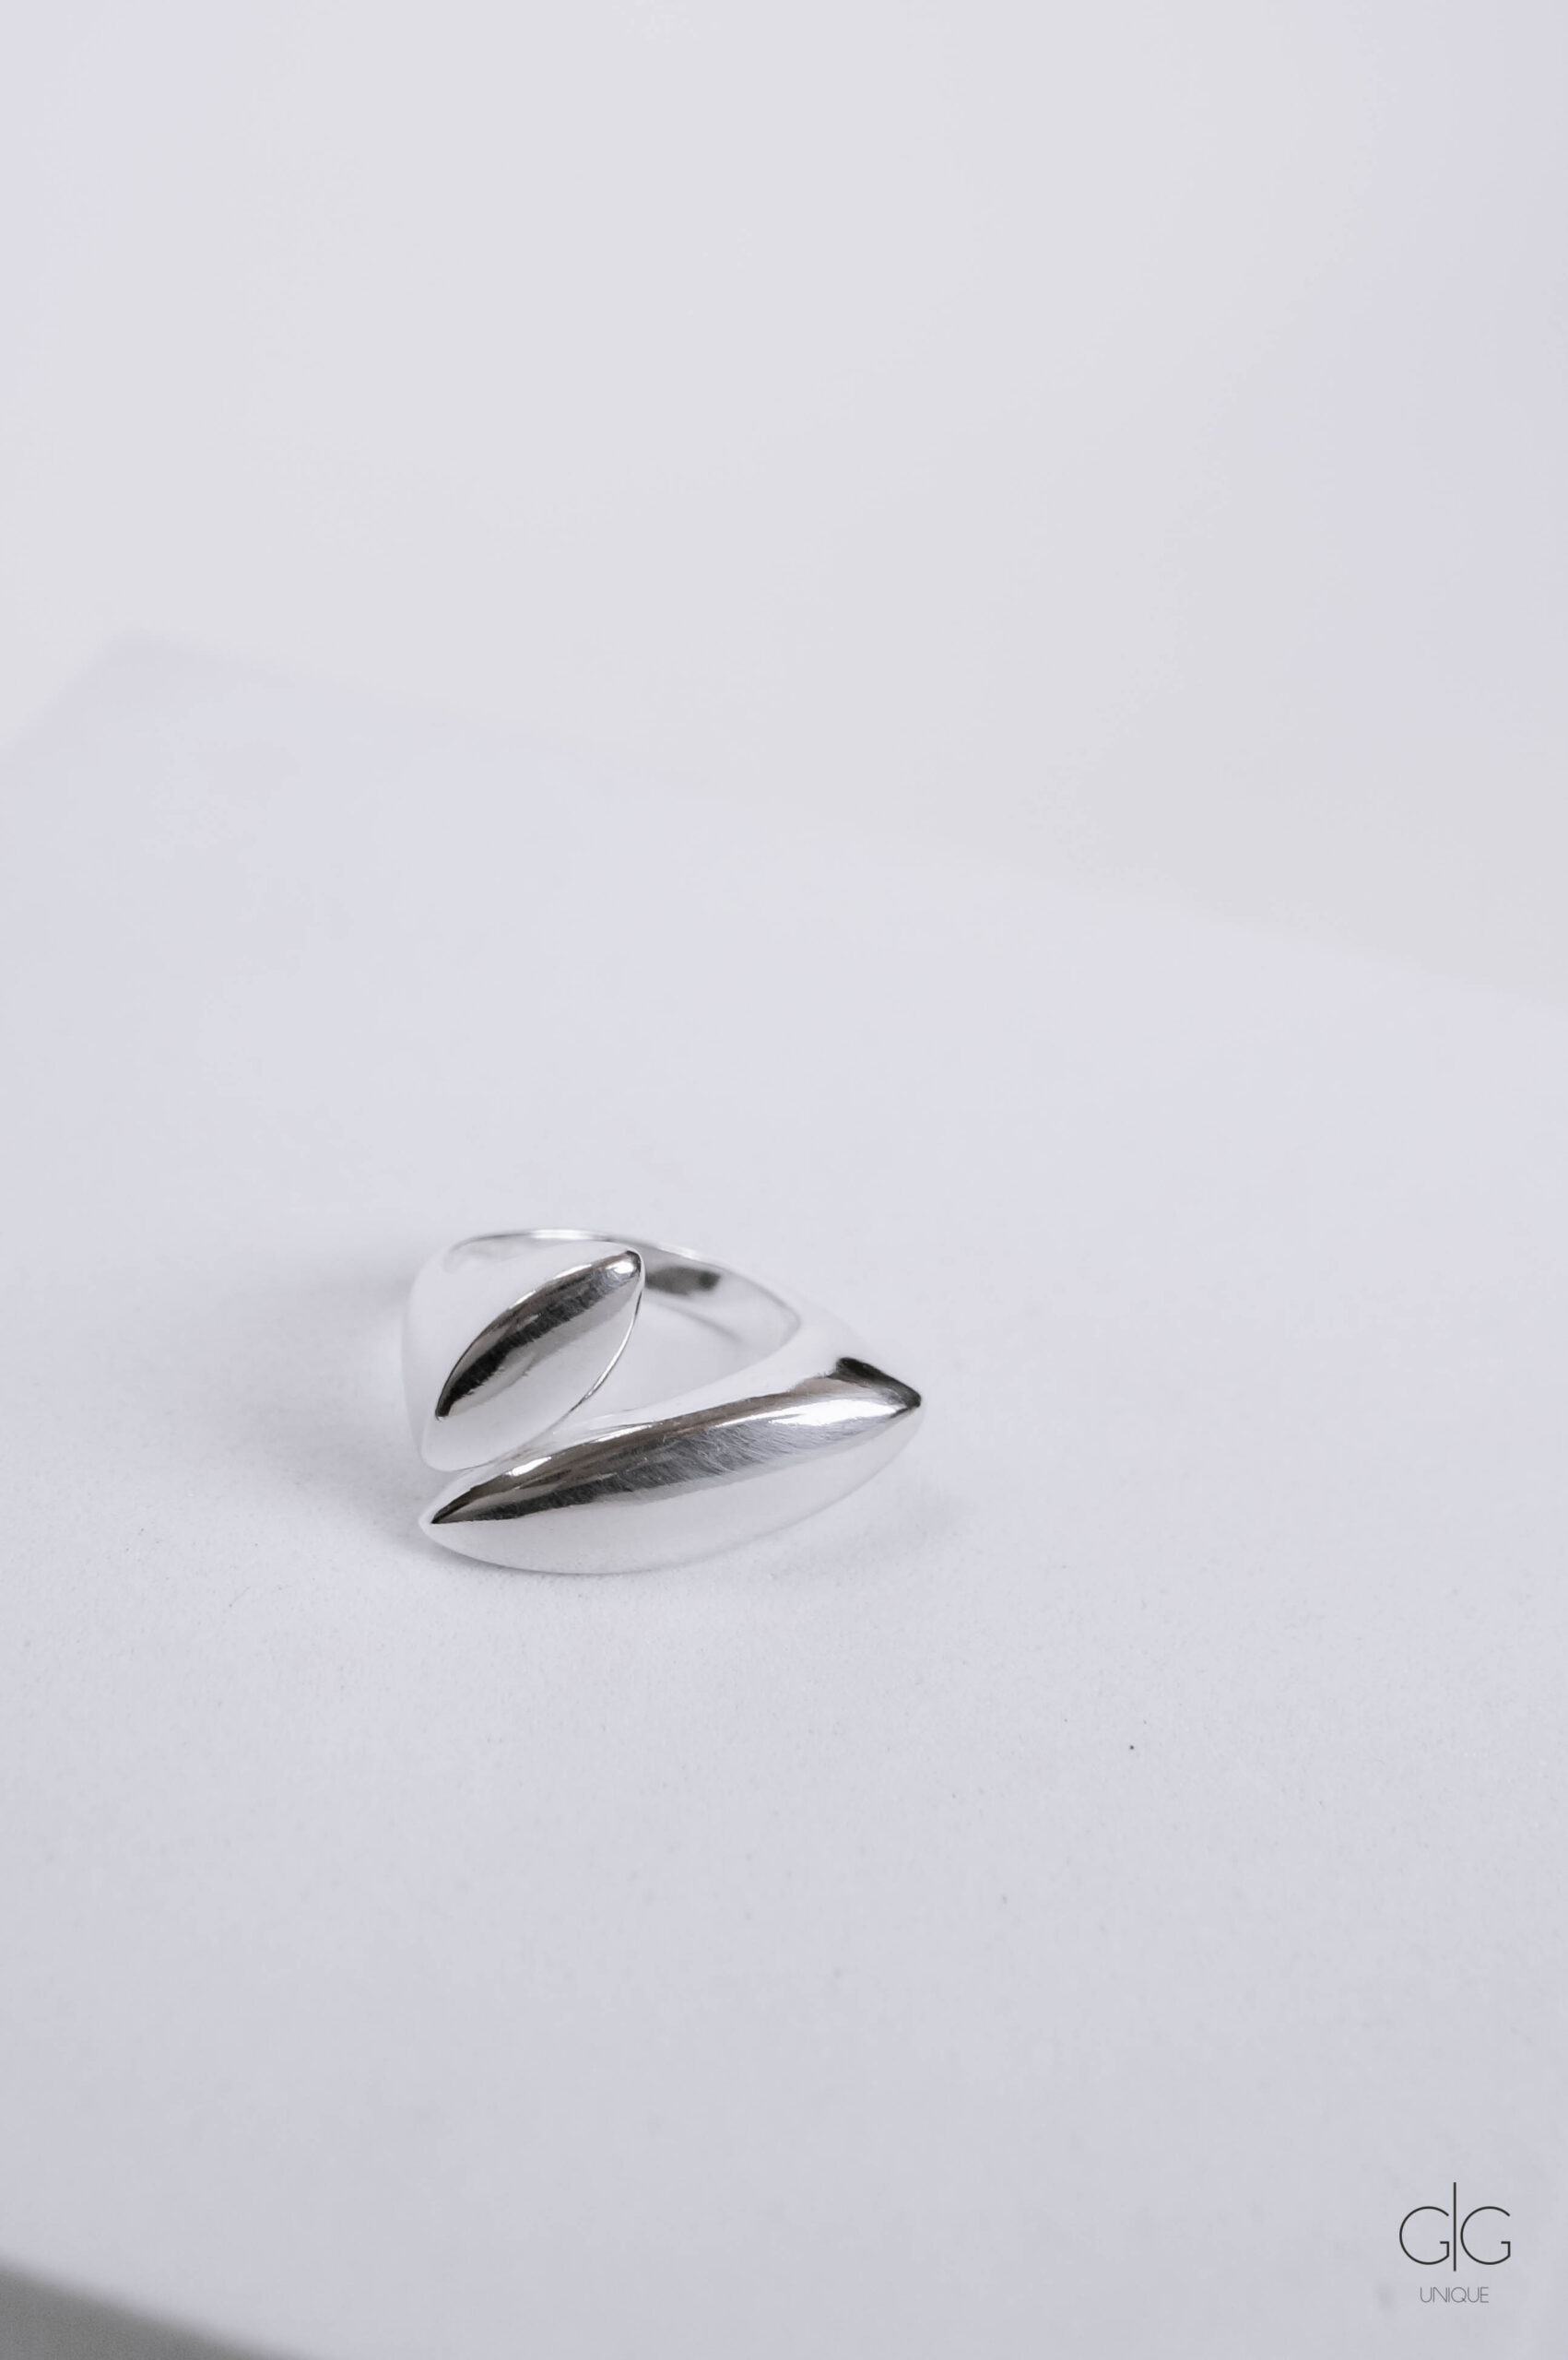 Silver adjustable ring - GG UNIQUE